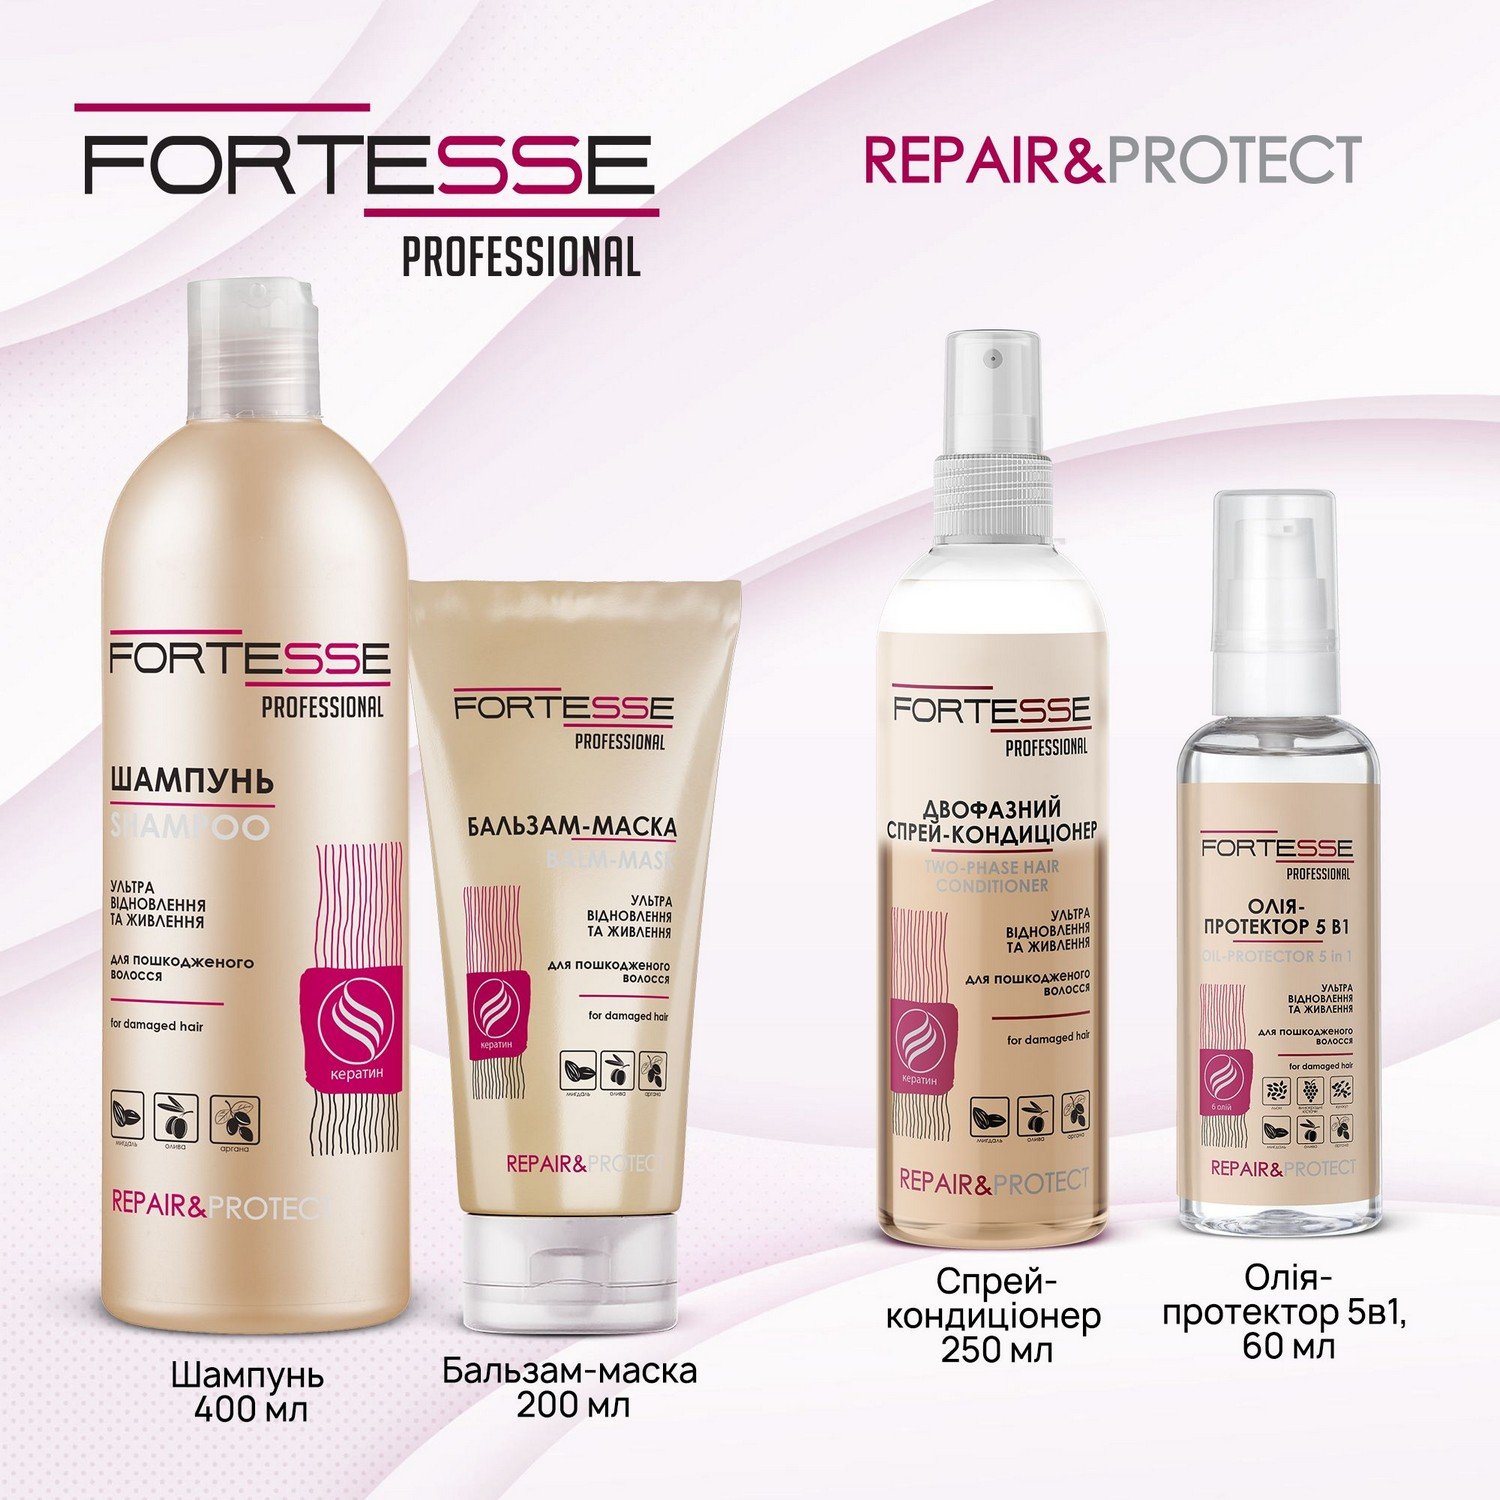 Олія-протектор 5 в 1 Fortesse Professional Repair&Protect Ультравідновлення та живлення, для пошкодженого волосся, 60 мл - фото 7